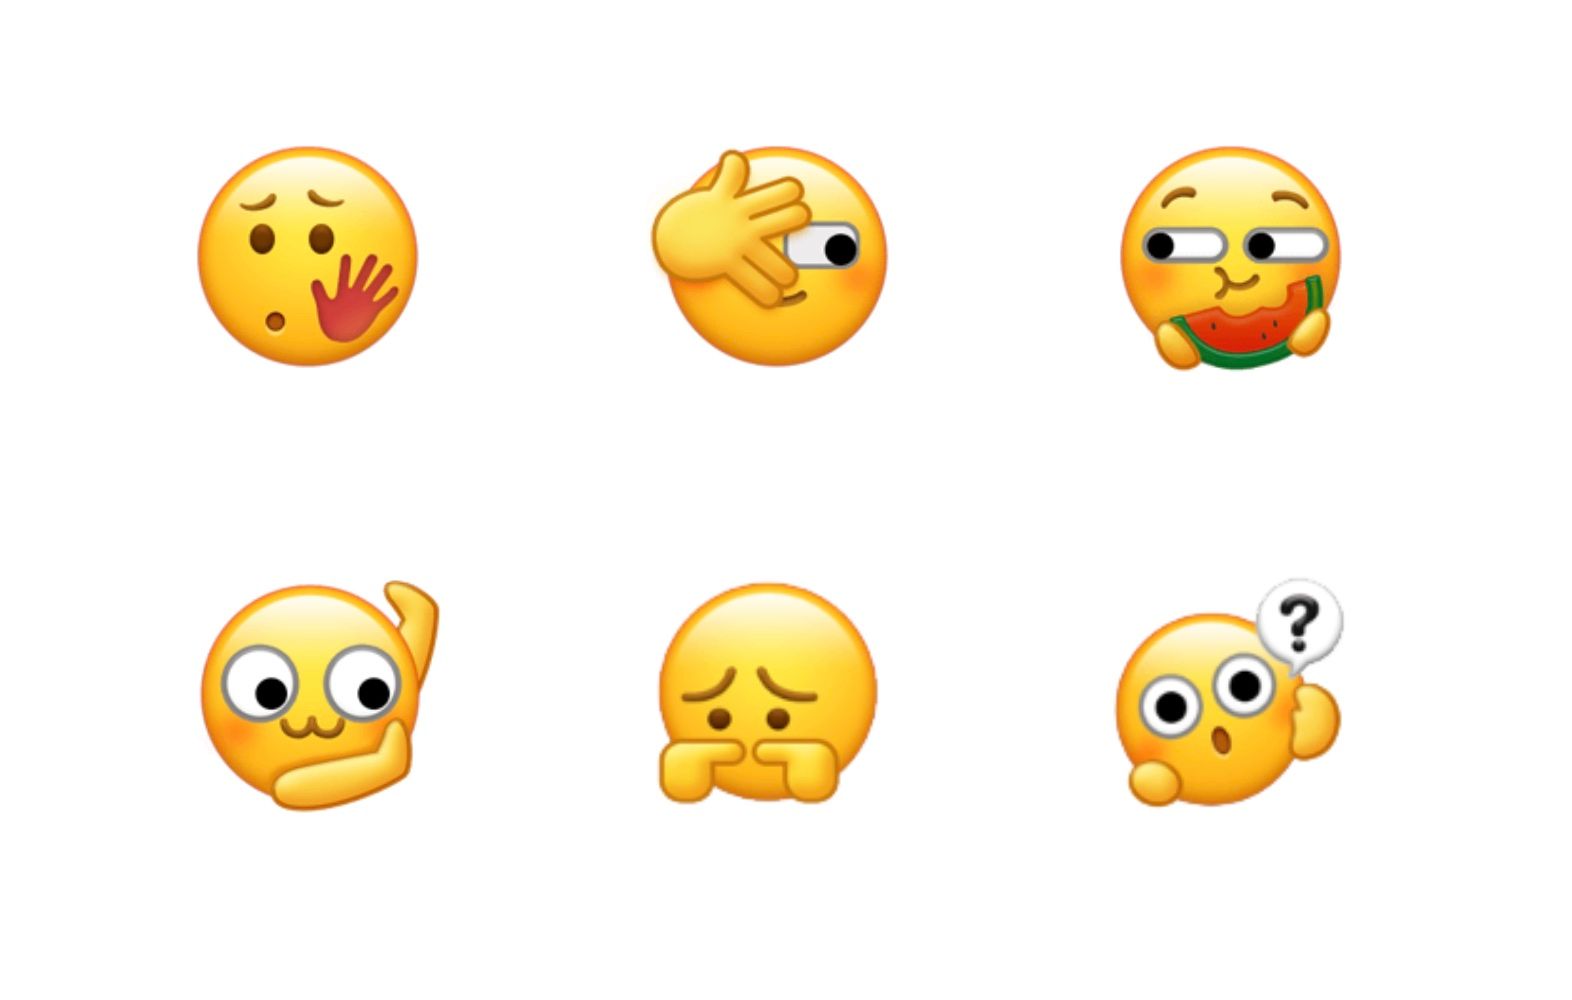 wechat emoji usage